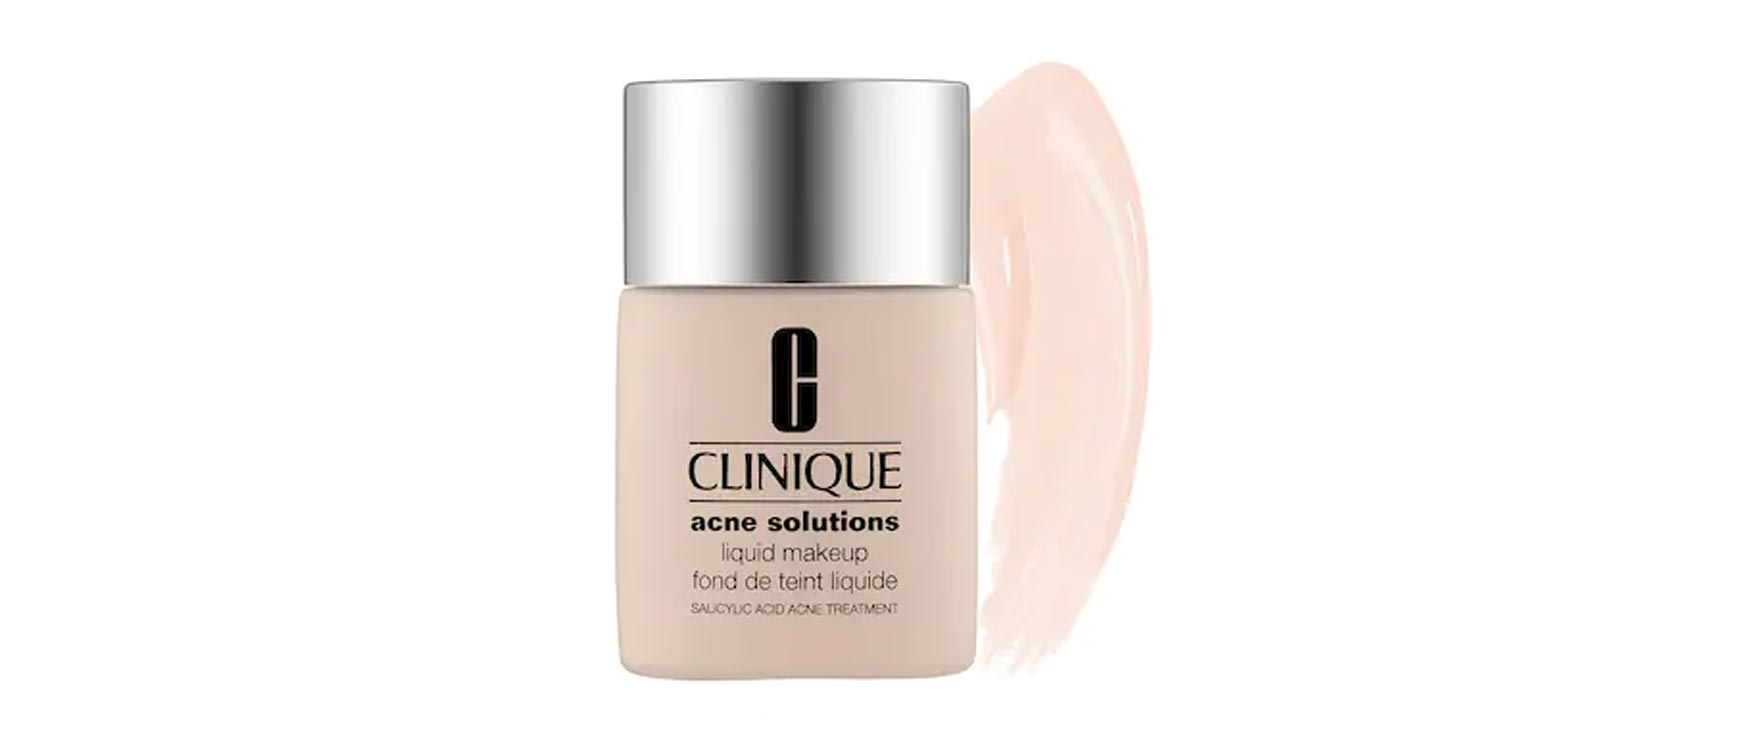 12. Clinique Acne Solutions Liquid Makeup